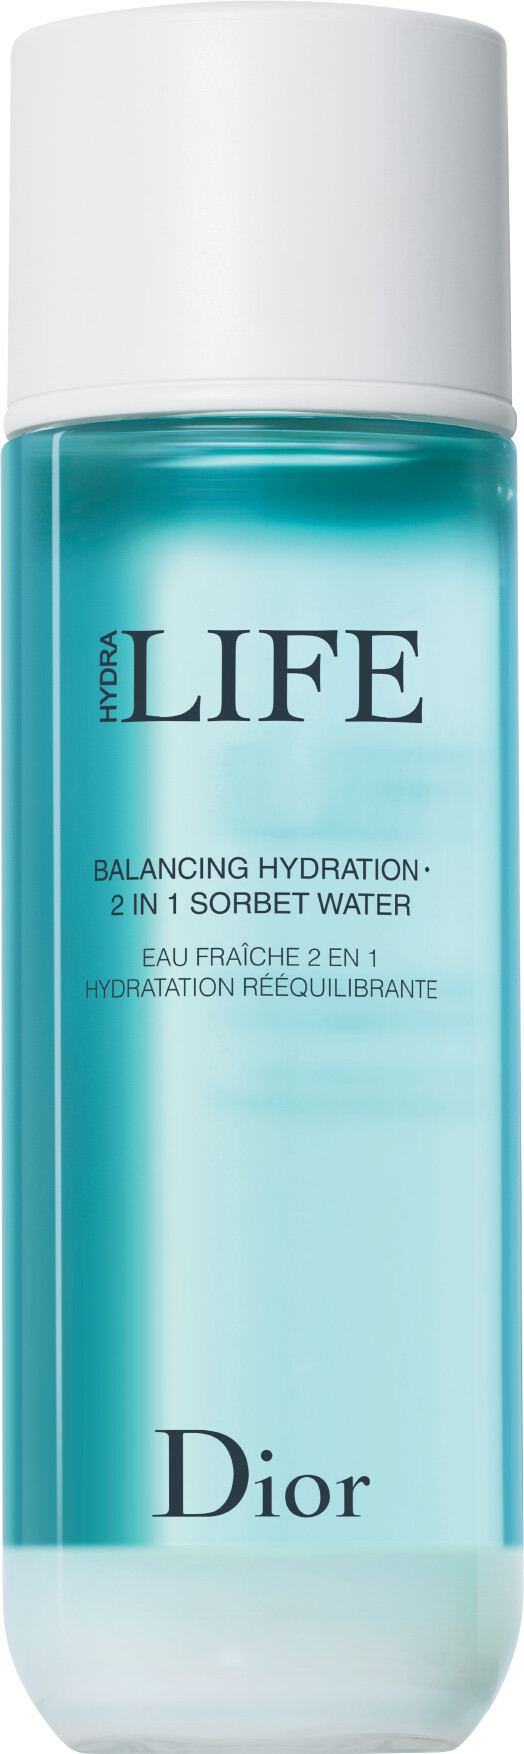 dior hydra life balancing hydration